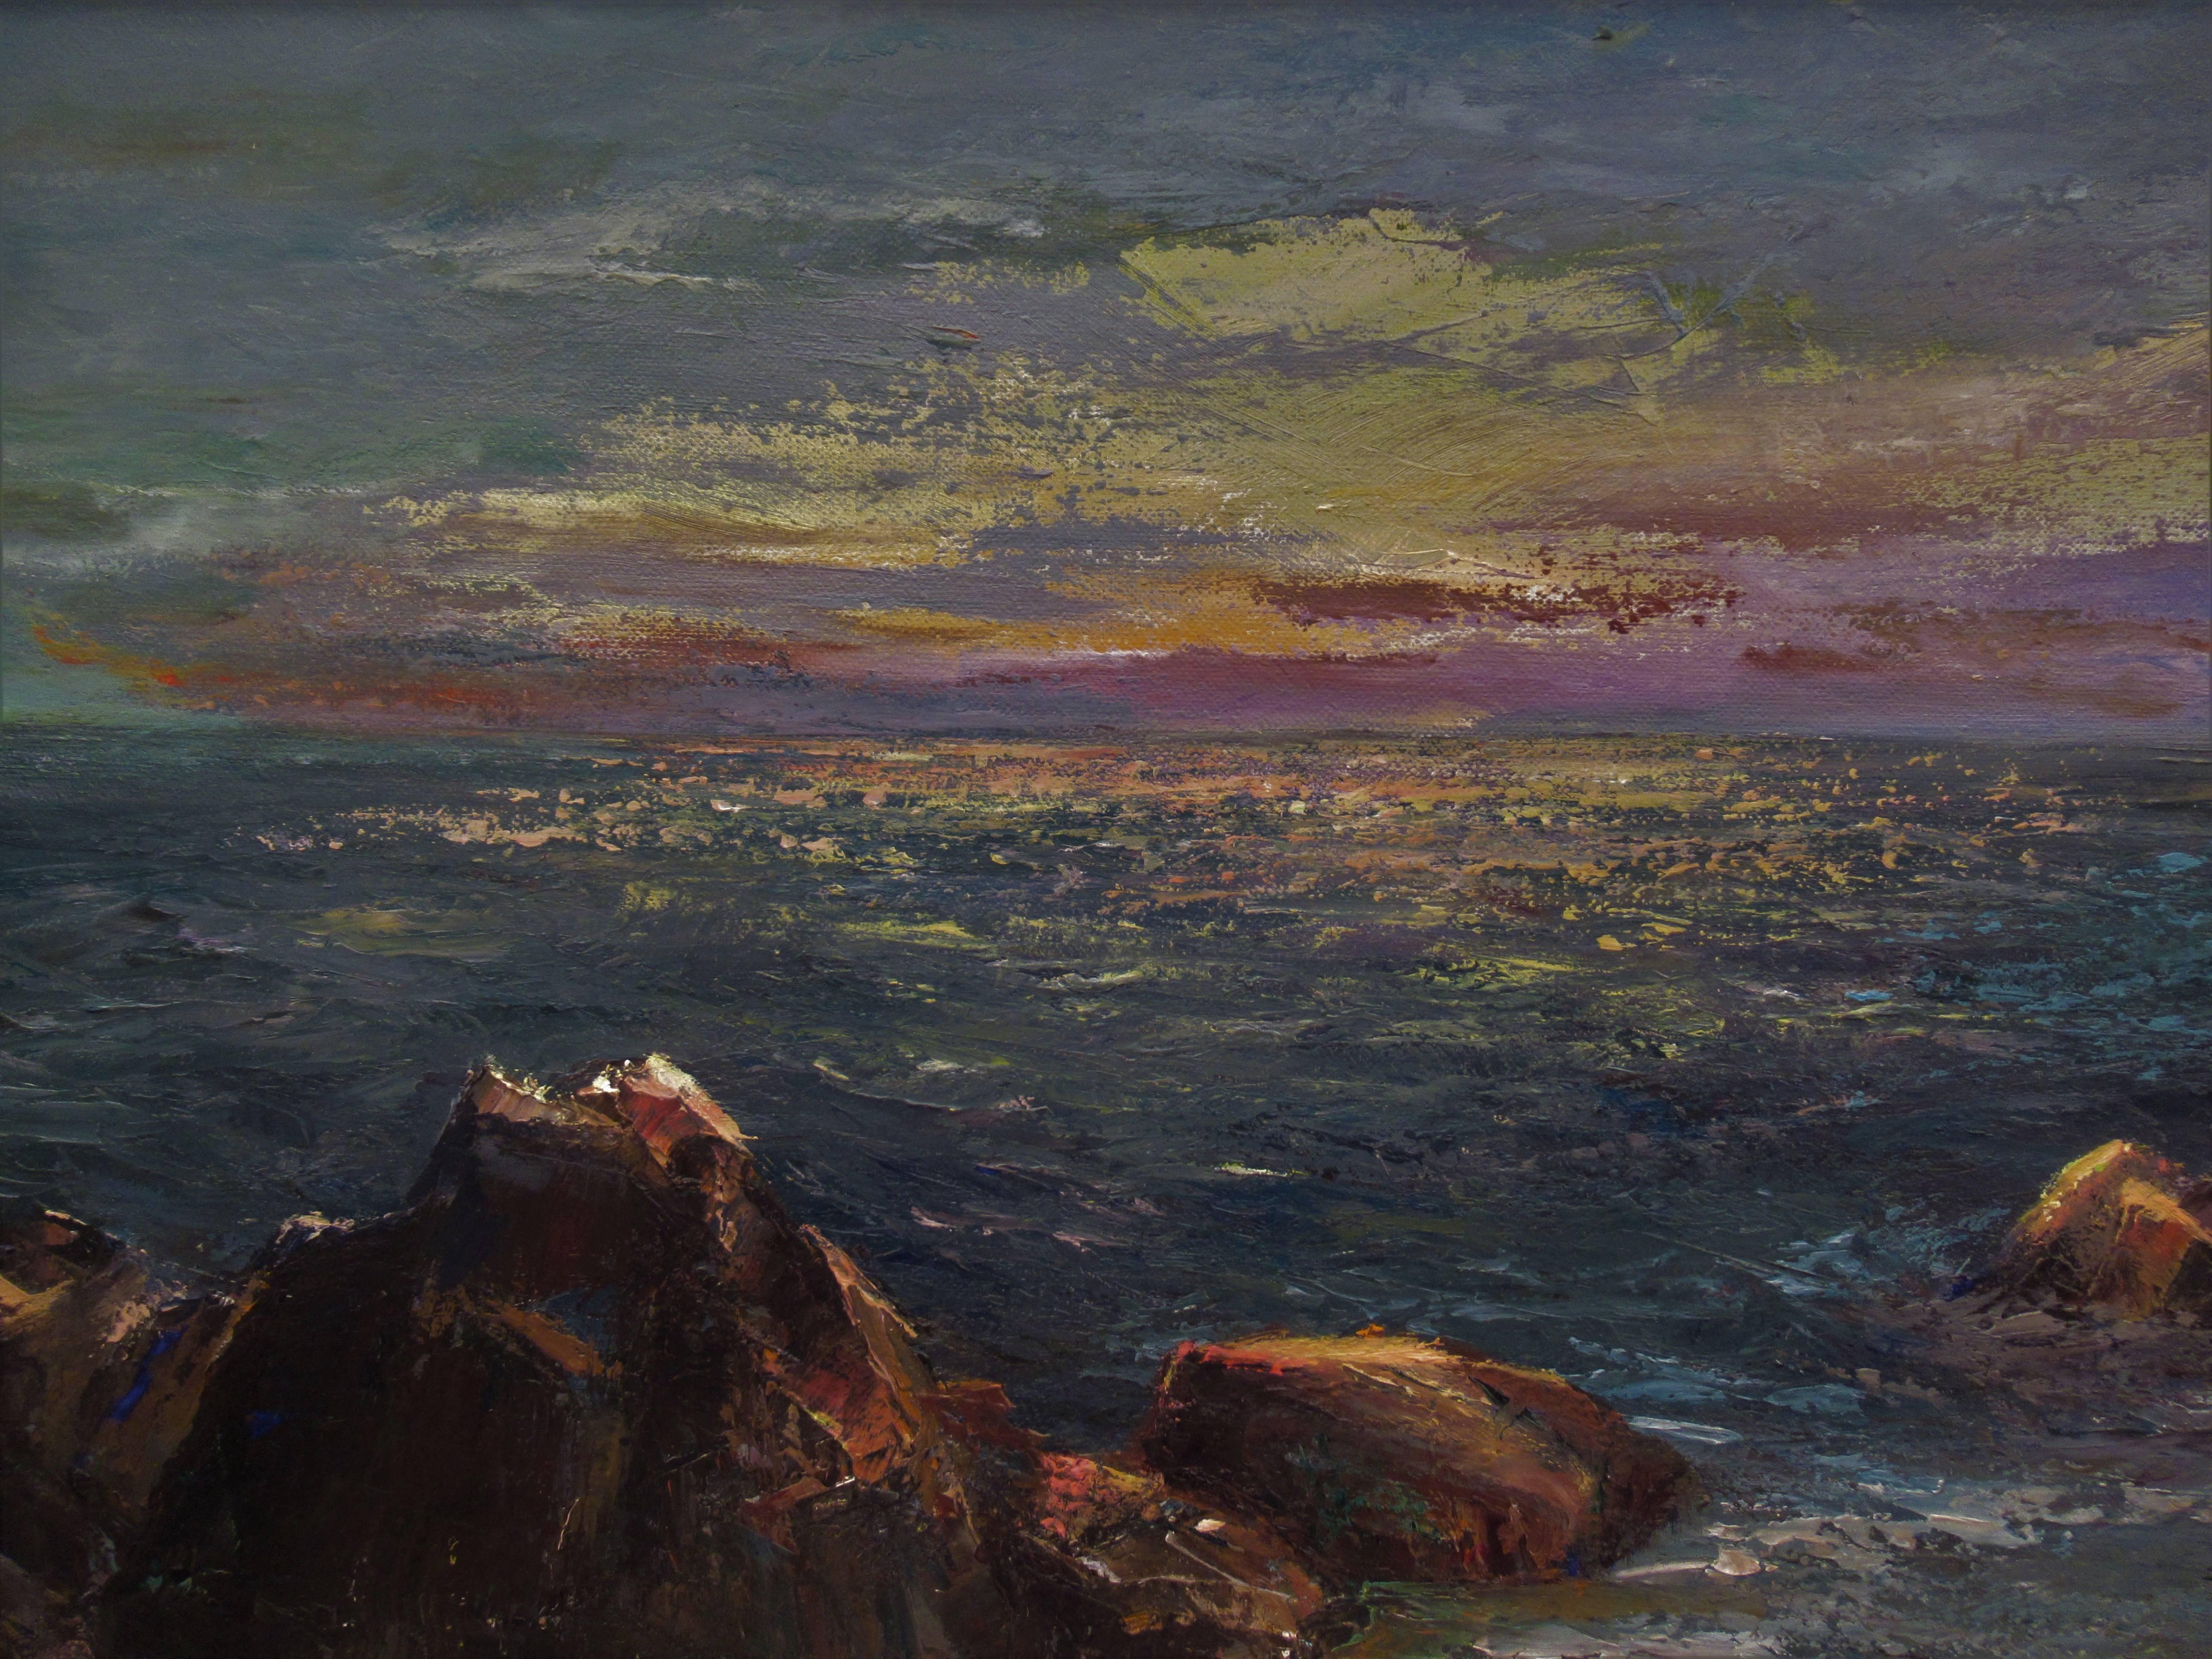 Paysage marin au crépuscule - Impressionnisme Painting par Irina Belotelkin Roublon